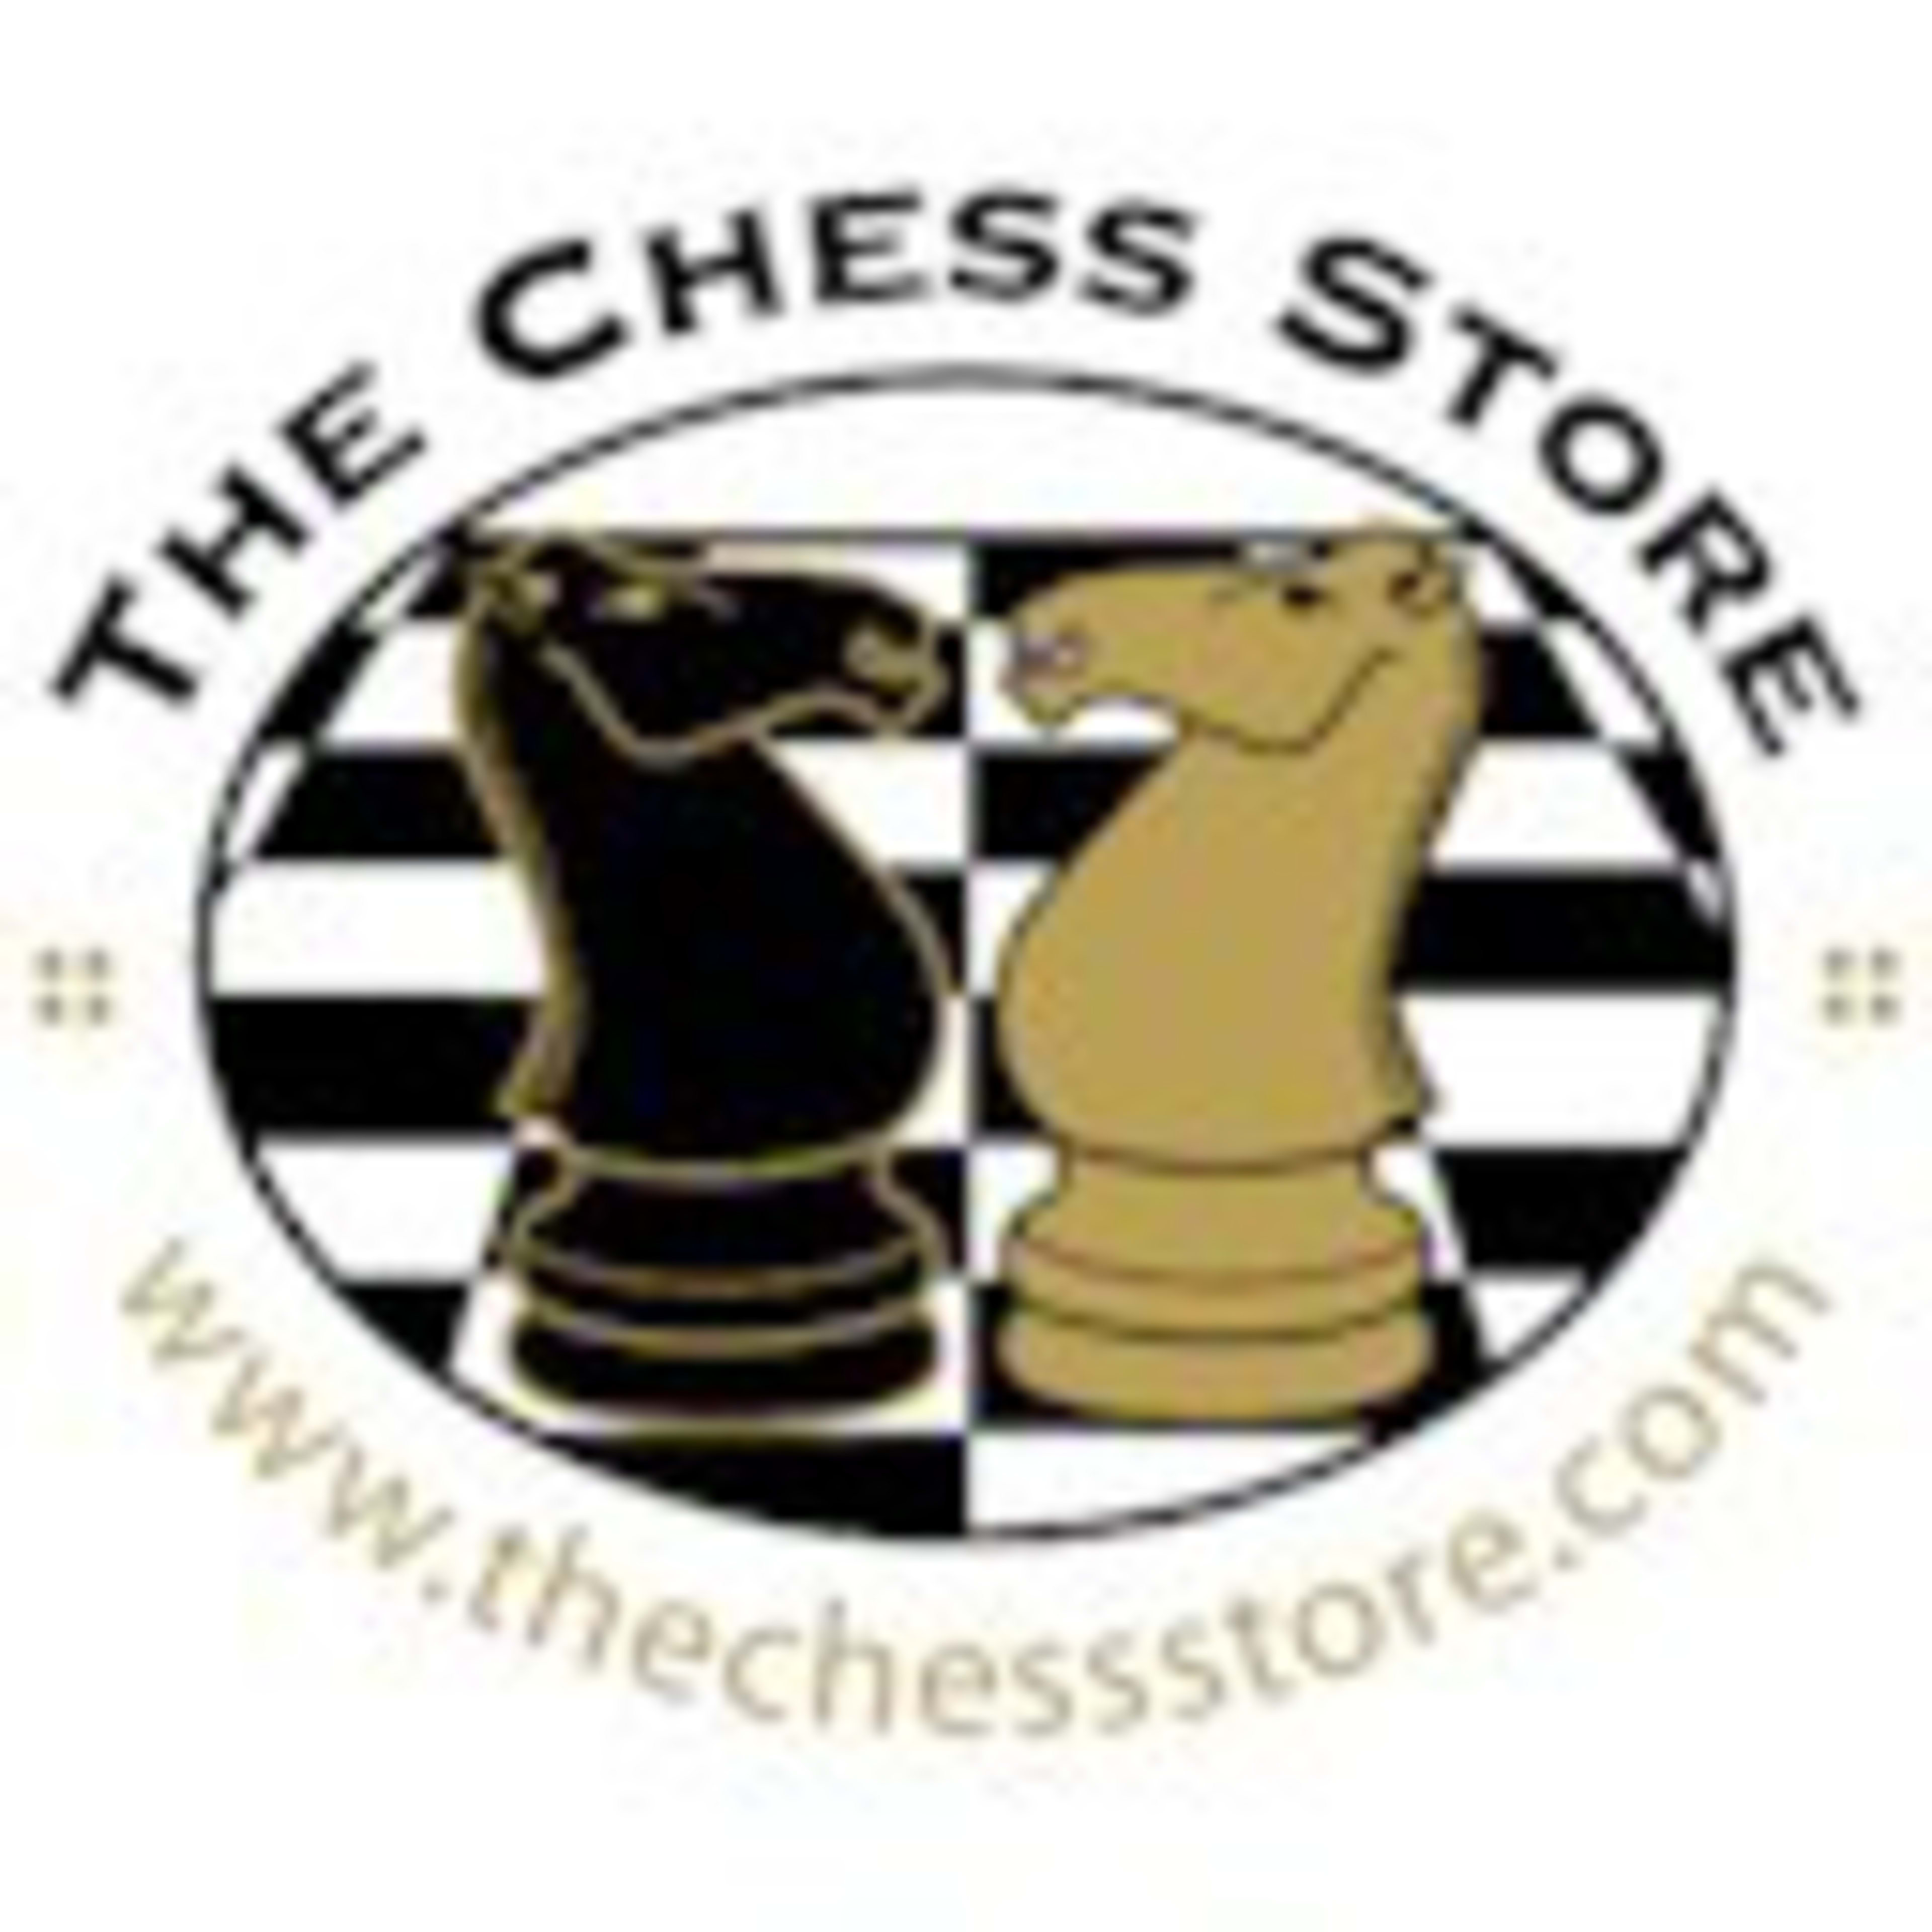 The Chess StoreCode